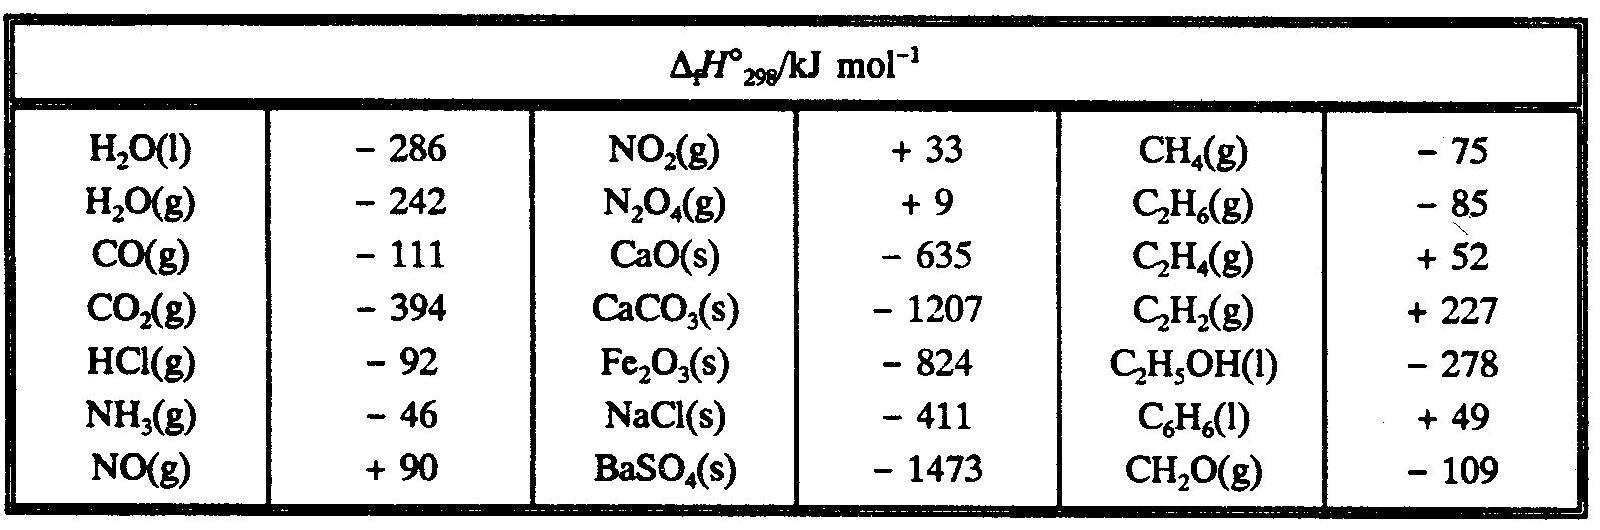 Теплота образования кислорода в кдж моль. Энтальпия образования co2. Энтальпии образования веществ таблица. Стандартная энтальпия co2. Энтальпия co2 таблица.